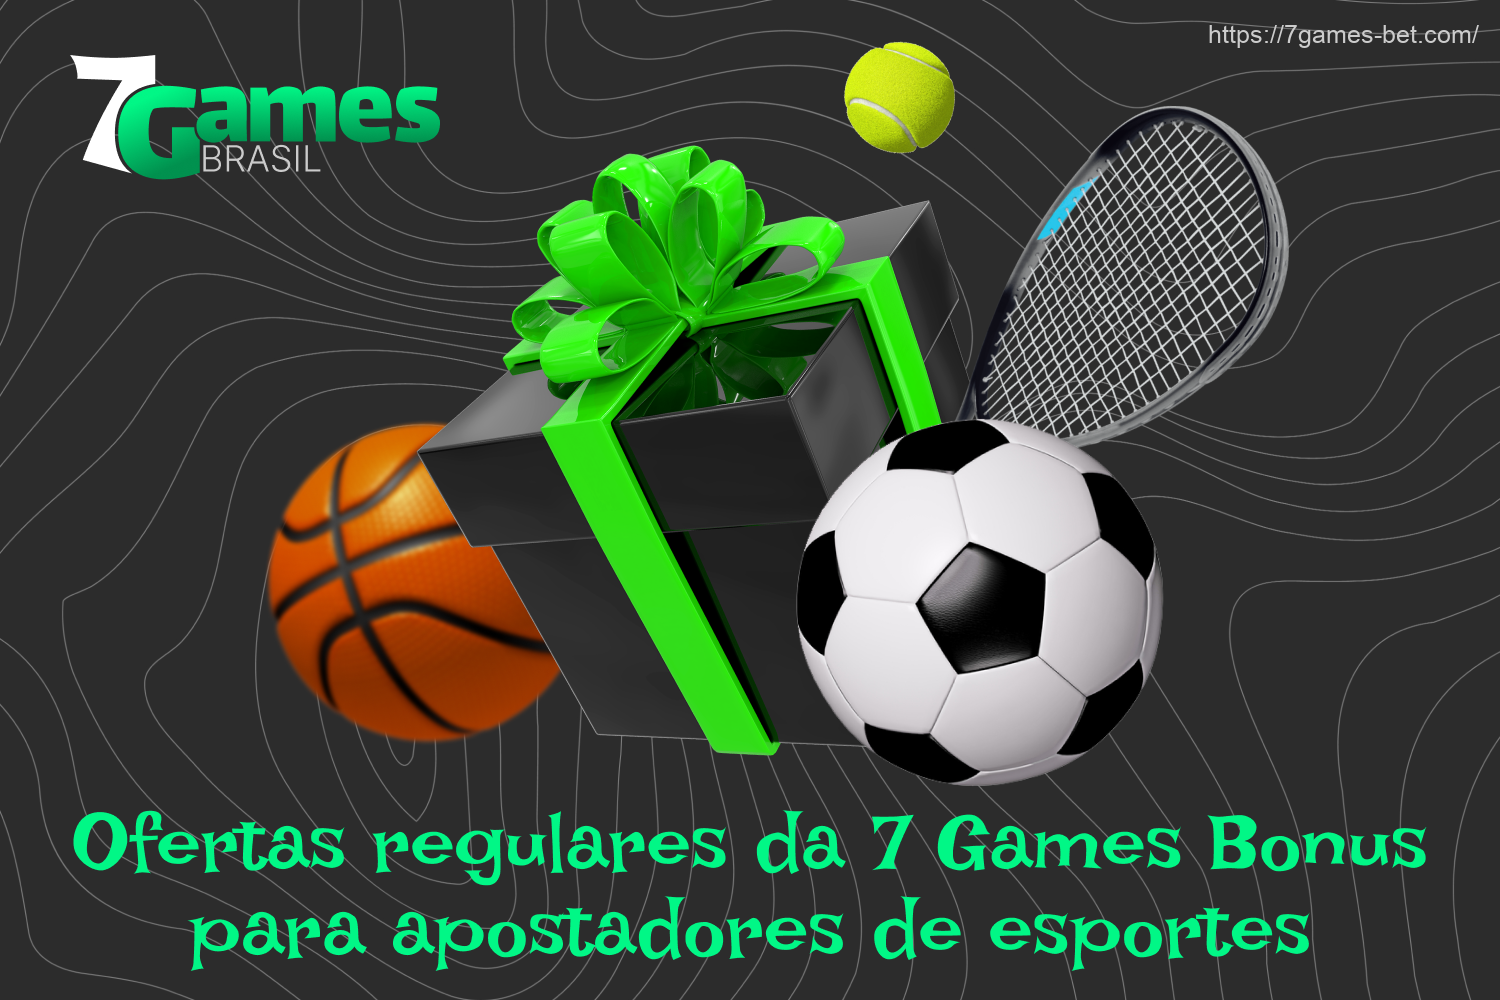 O 7Games Casino sempre tenta agradar os apostadores brasileiros, por isso oferece uma grande seleção de bônus de apostas esportivas